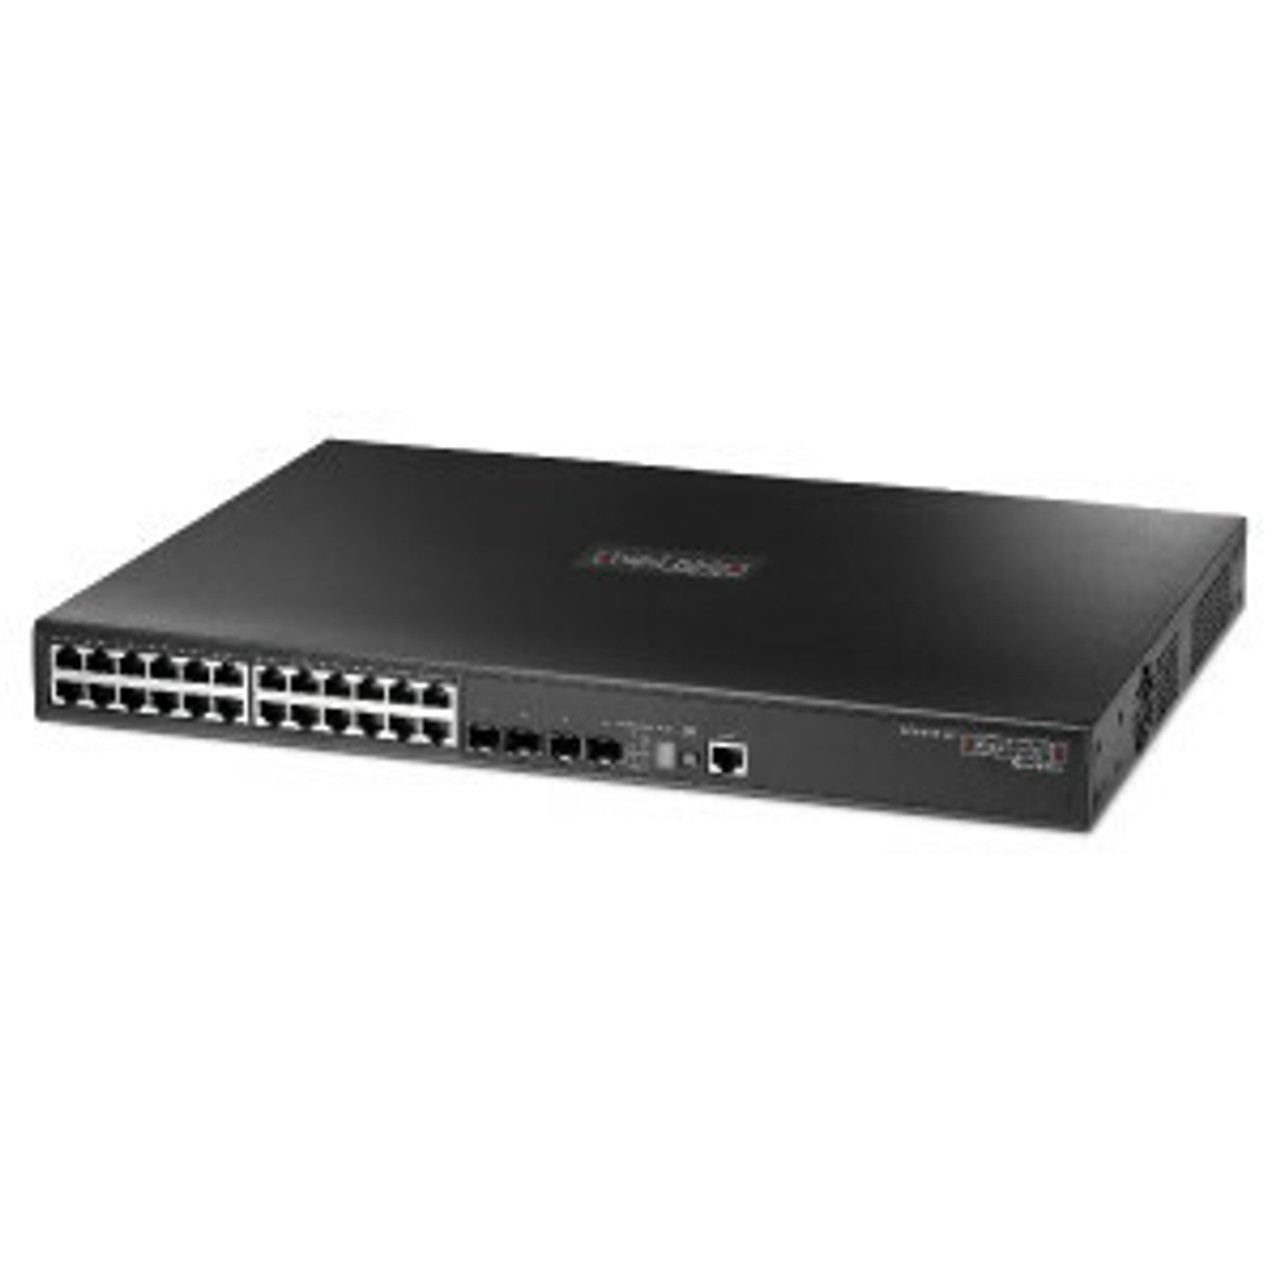 ECS4610-26T SMCNetworks 24-Ports SFP 10/100/1000 IPV4/V6 Managed L3 Gigabit Ethernet Switch Rack Mountable (Refurbished)